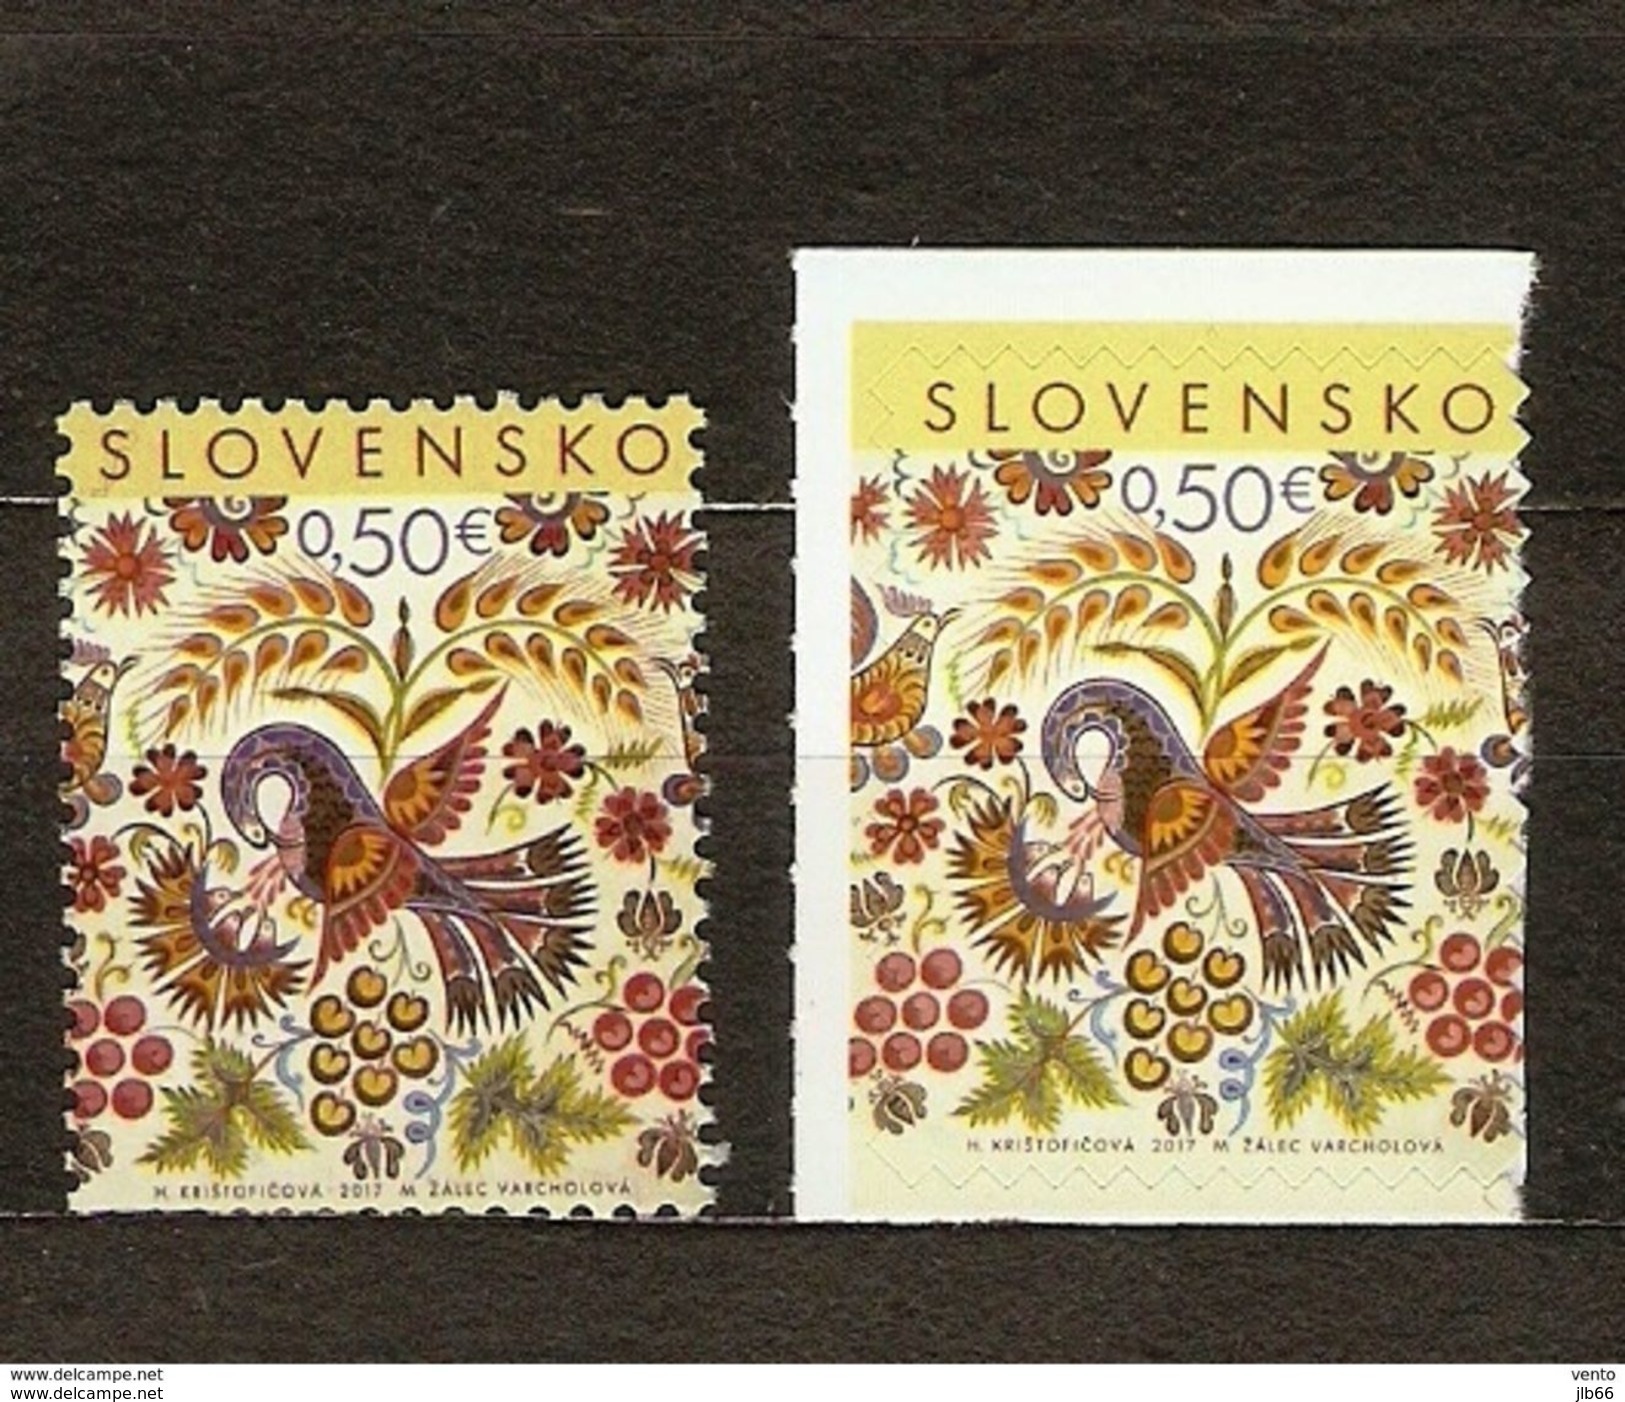 Slovaquie 2017 PAQUES Les 2 Timbres Dentelé Et Non Dentelé Auto Adhésif Peinture Tradfitionnelle De VAJNORY - Unused Stamps